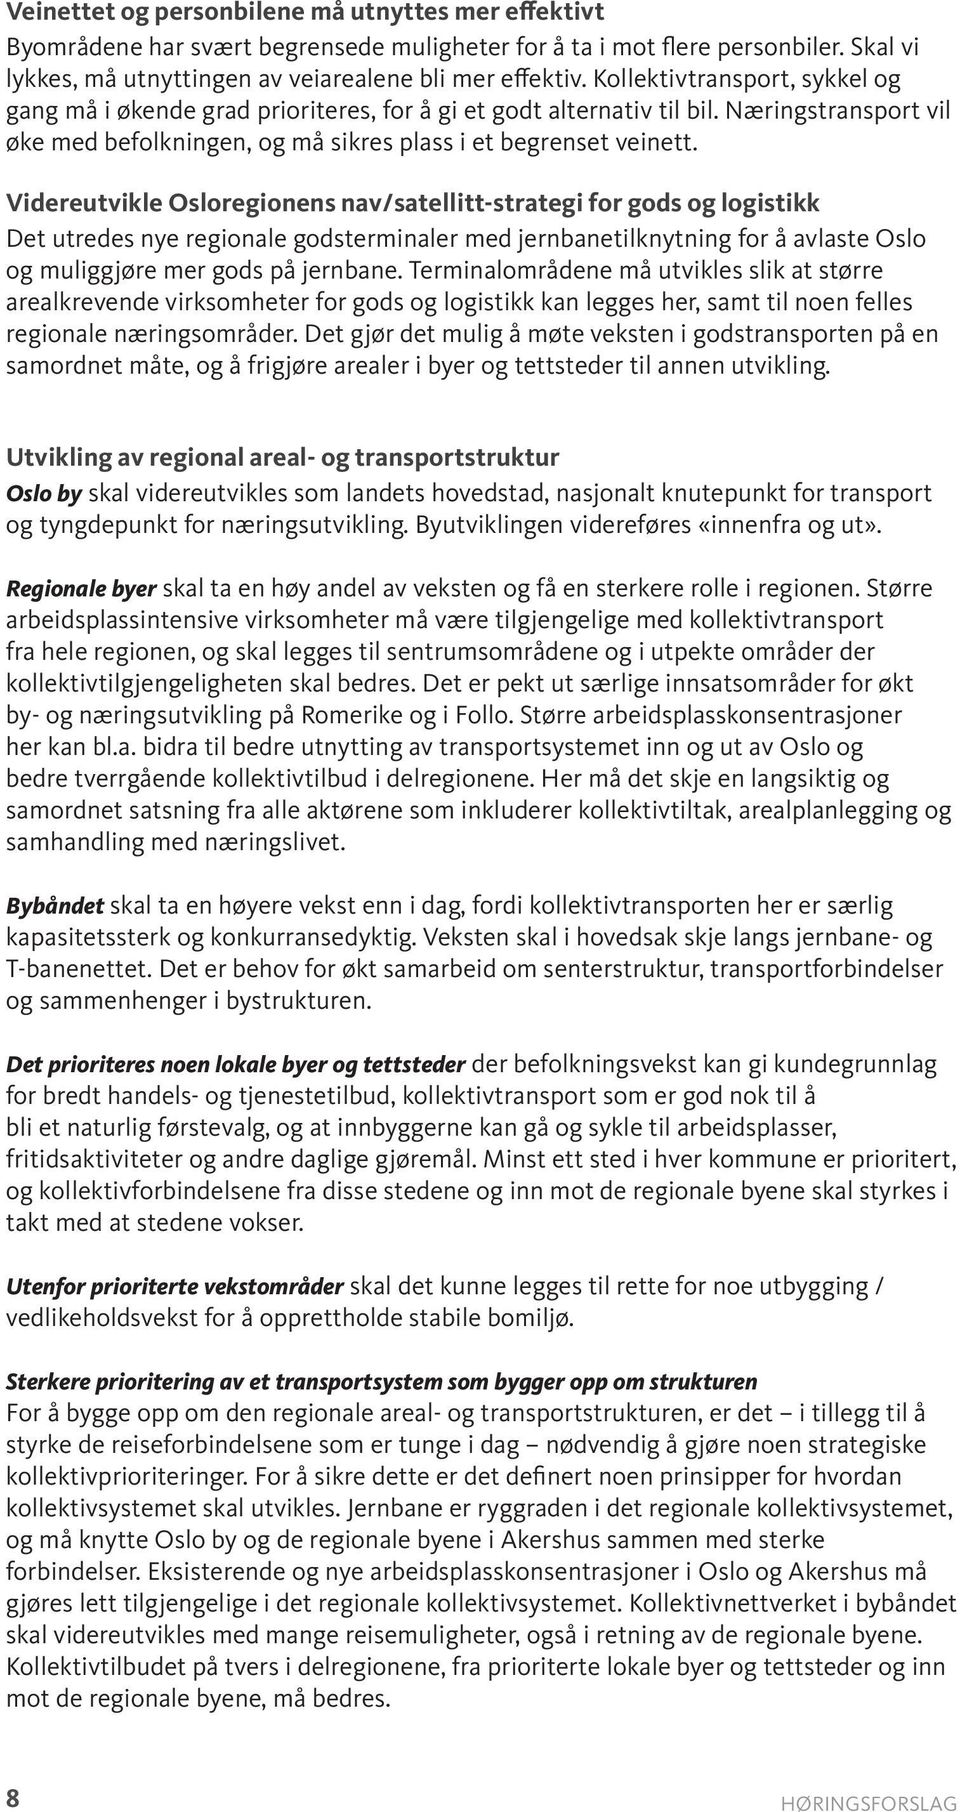 Videreutvikle Osloregionens nav/satellitt-strategi for gods og logistikk Det utredes nye regionale godsterminaler med jernbanetilknytning for å avlaste Oslo og muliggjøre mer gods på jernbane.